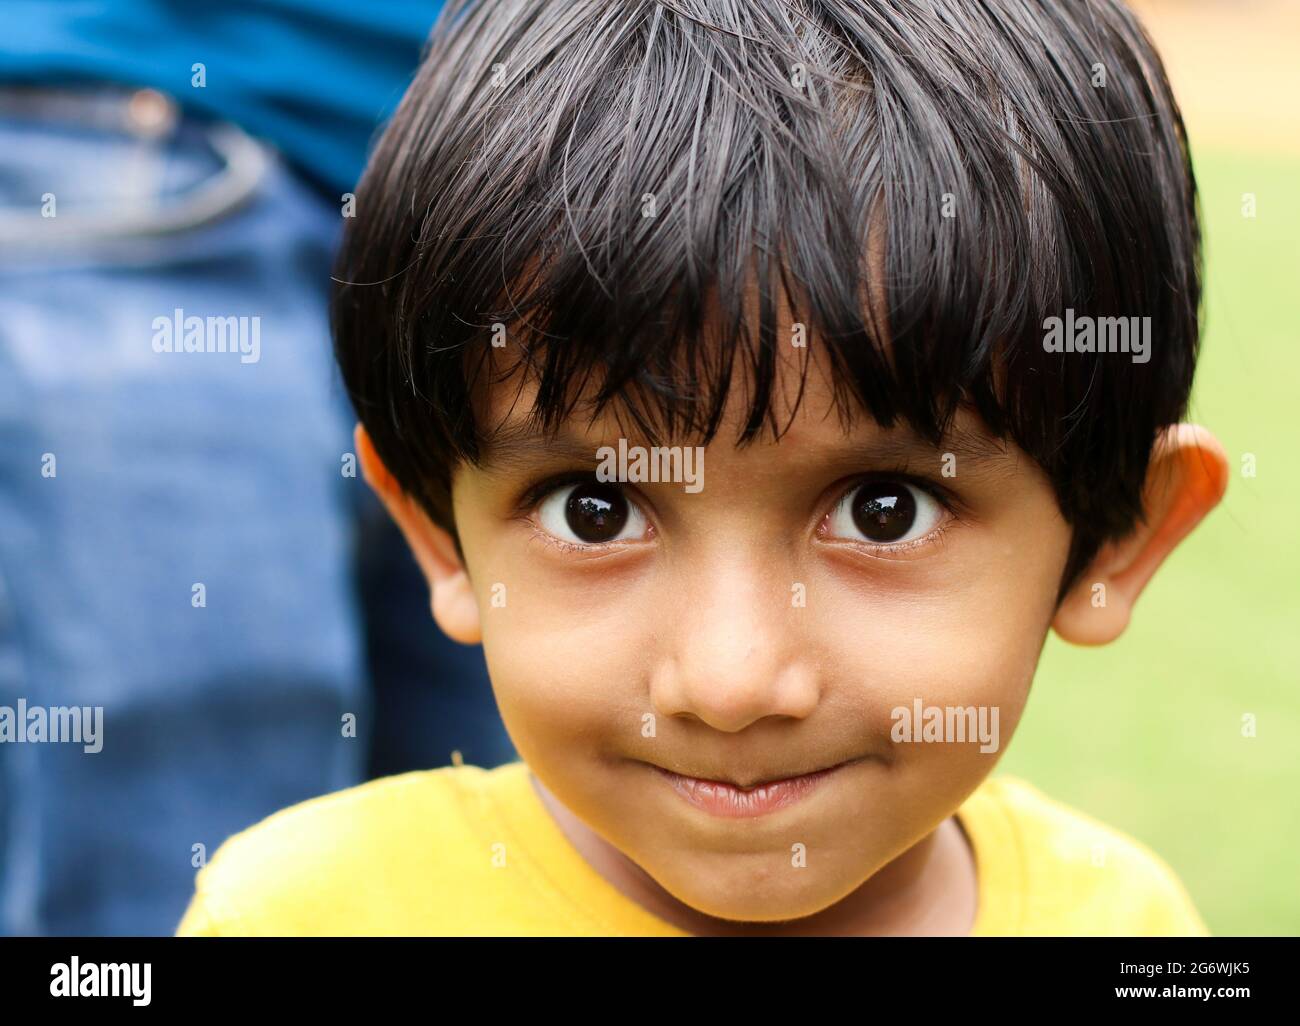 Porträt eines niedlichen kleinen Jungen mit seidig glattem Haar, das über seine Stirn fällt Stockfoto